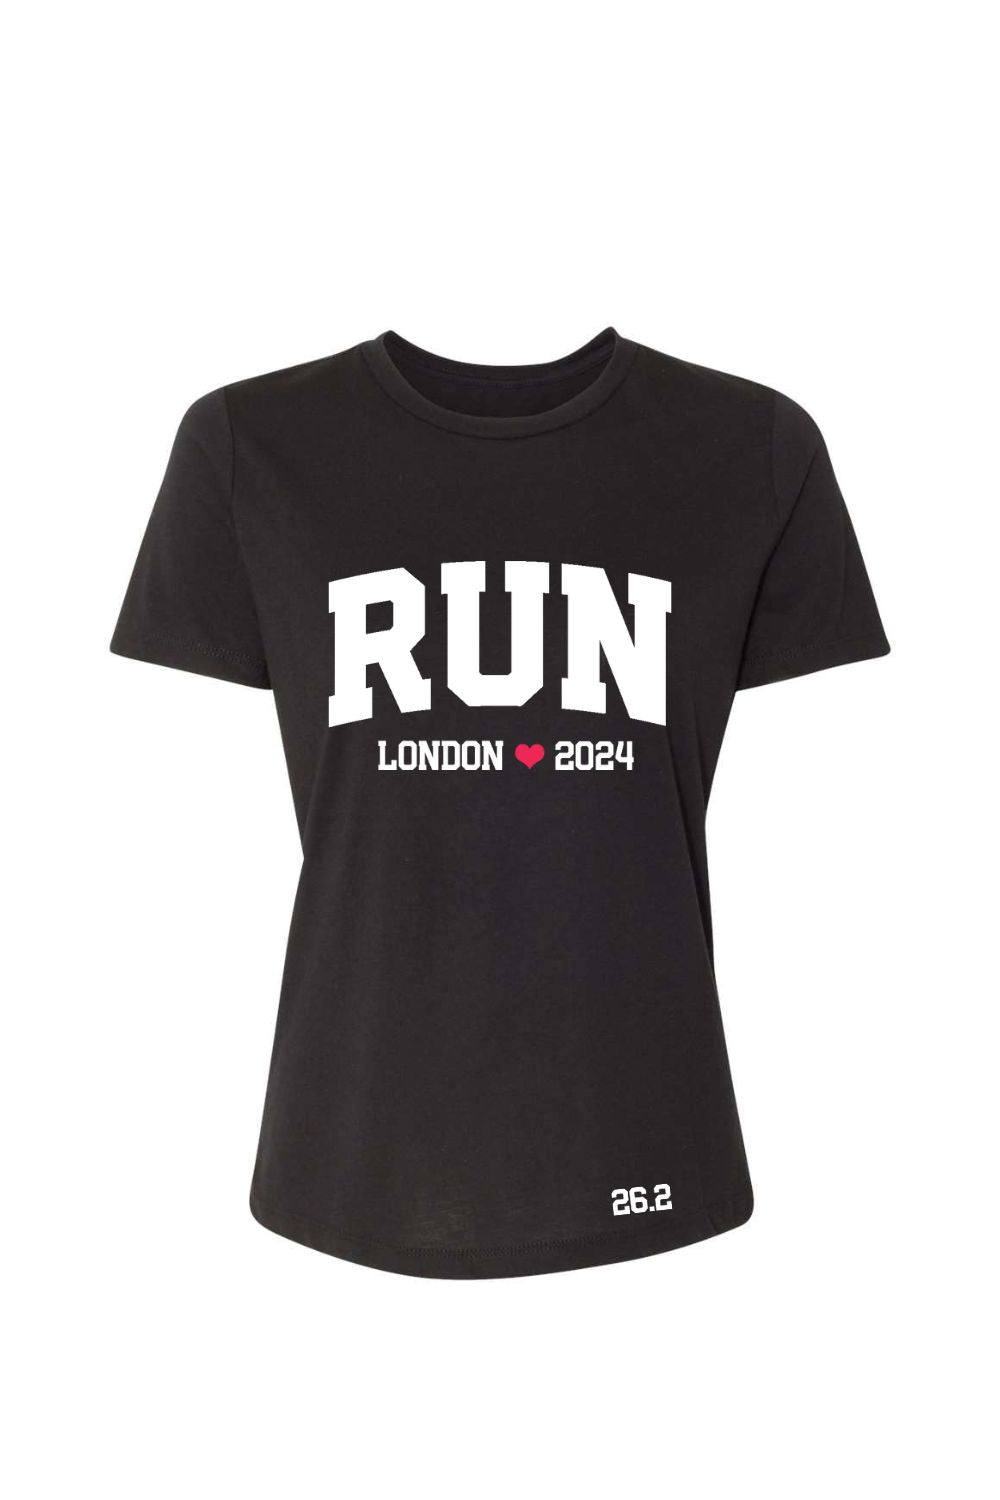 RUN London 2024 women's T-shirt